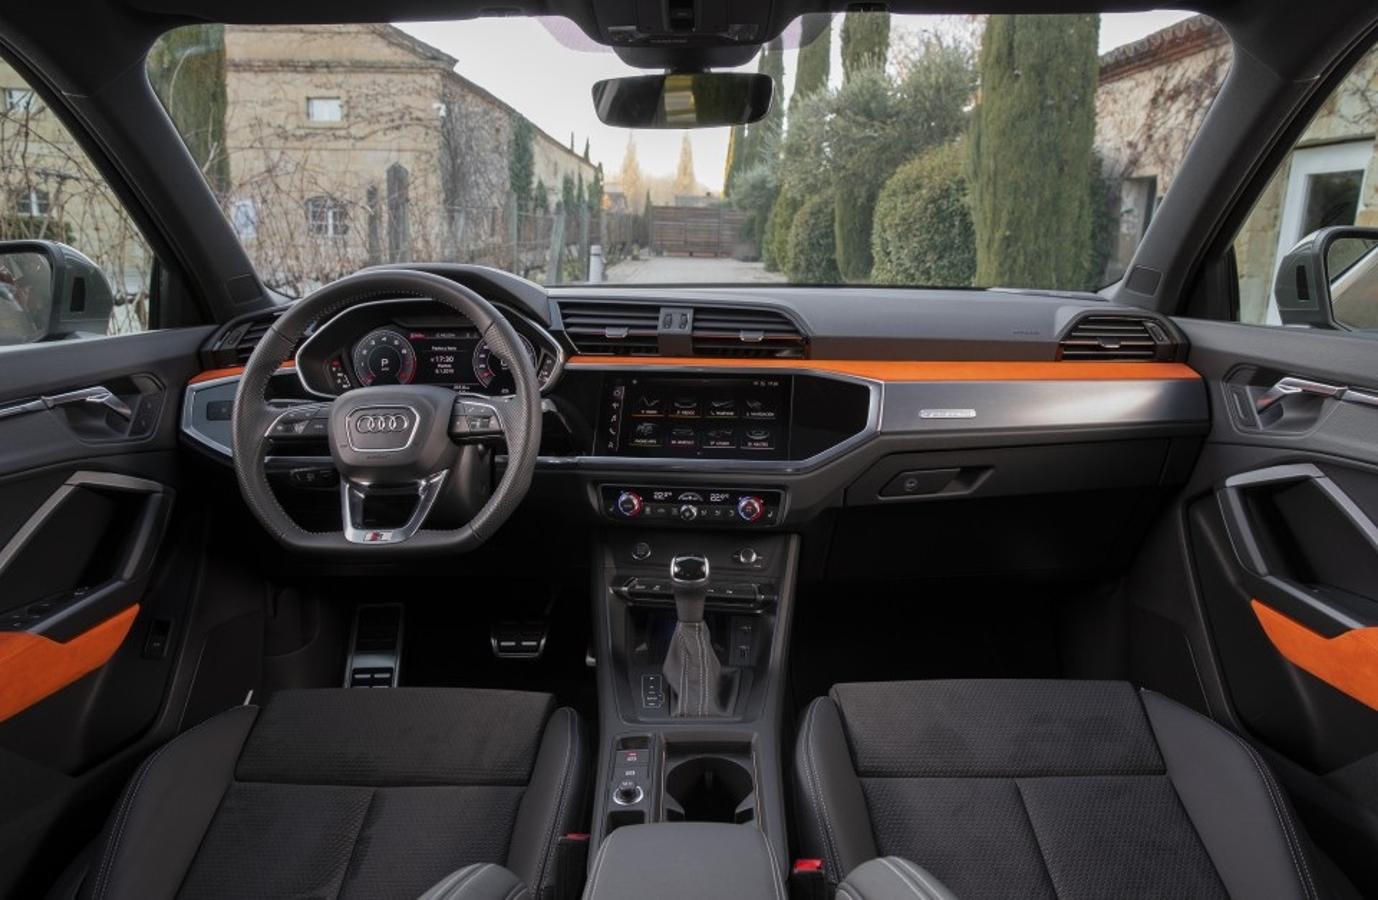 El nuevo Audi Q3 representa un cambio radical frente al modelo anterior. Es de mayor tamaño y se caracteriza por un diseño más deportivo con detalles como la nueva parrilla delantera octogonal. Se comercializa desde 35.880 euros.